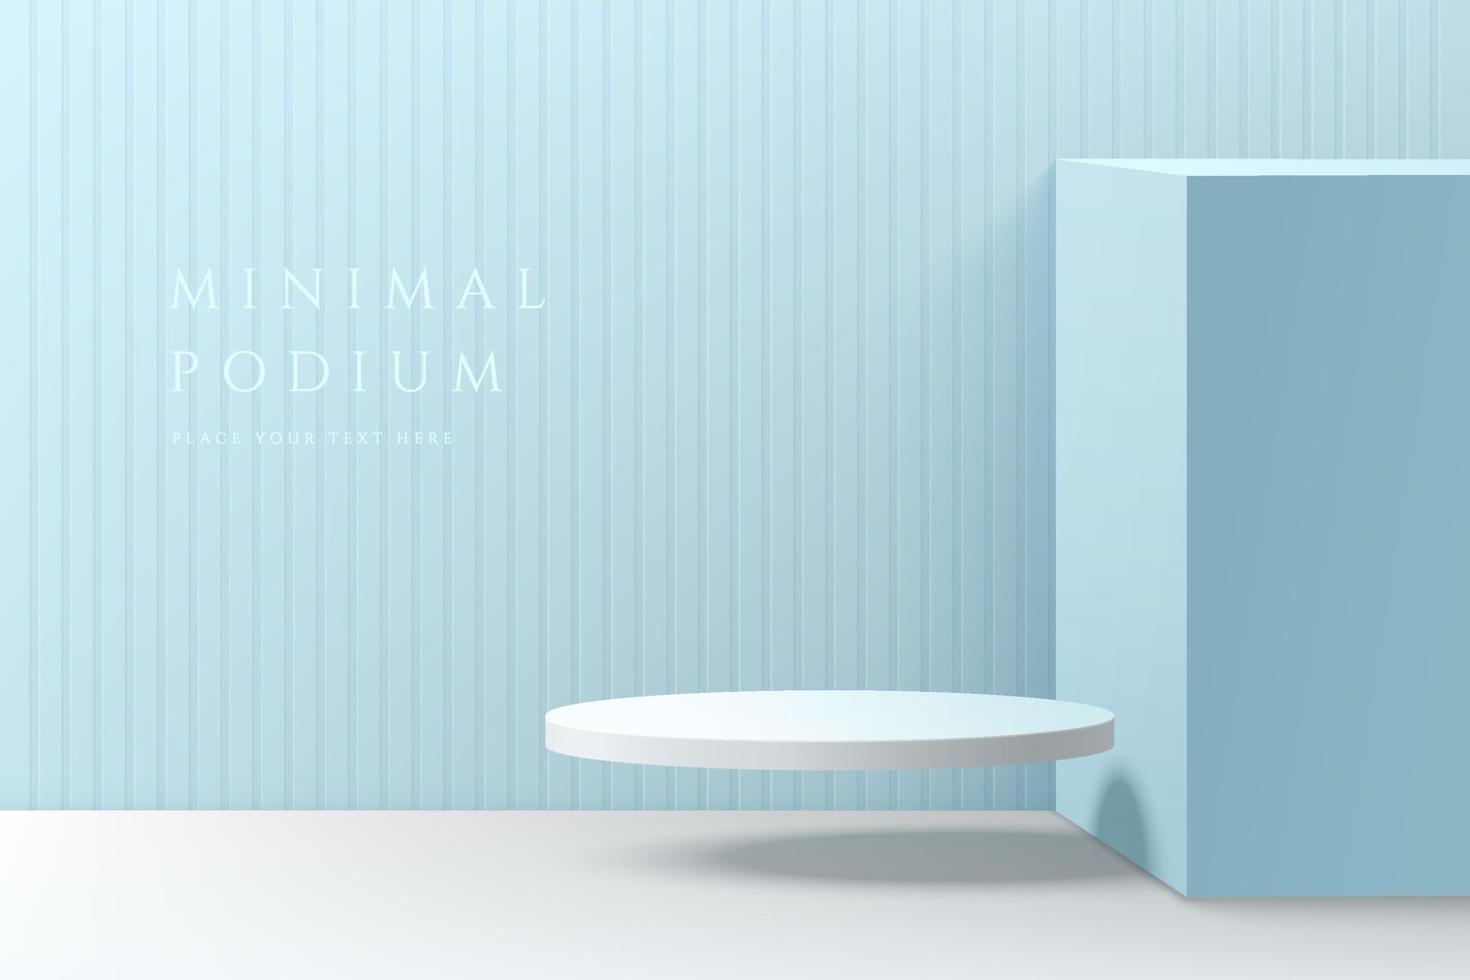 salle bleue abstraite 3d avec podium de piédestal de cylindre blanc réaliste flottant dans les airs. scène murale minimale pastel pour l'affichage du produit maquette. formes géométriques vectorielles. scène pour vitrine. vecteur eps10.